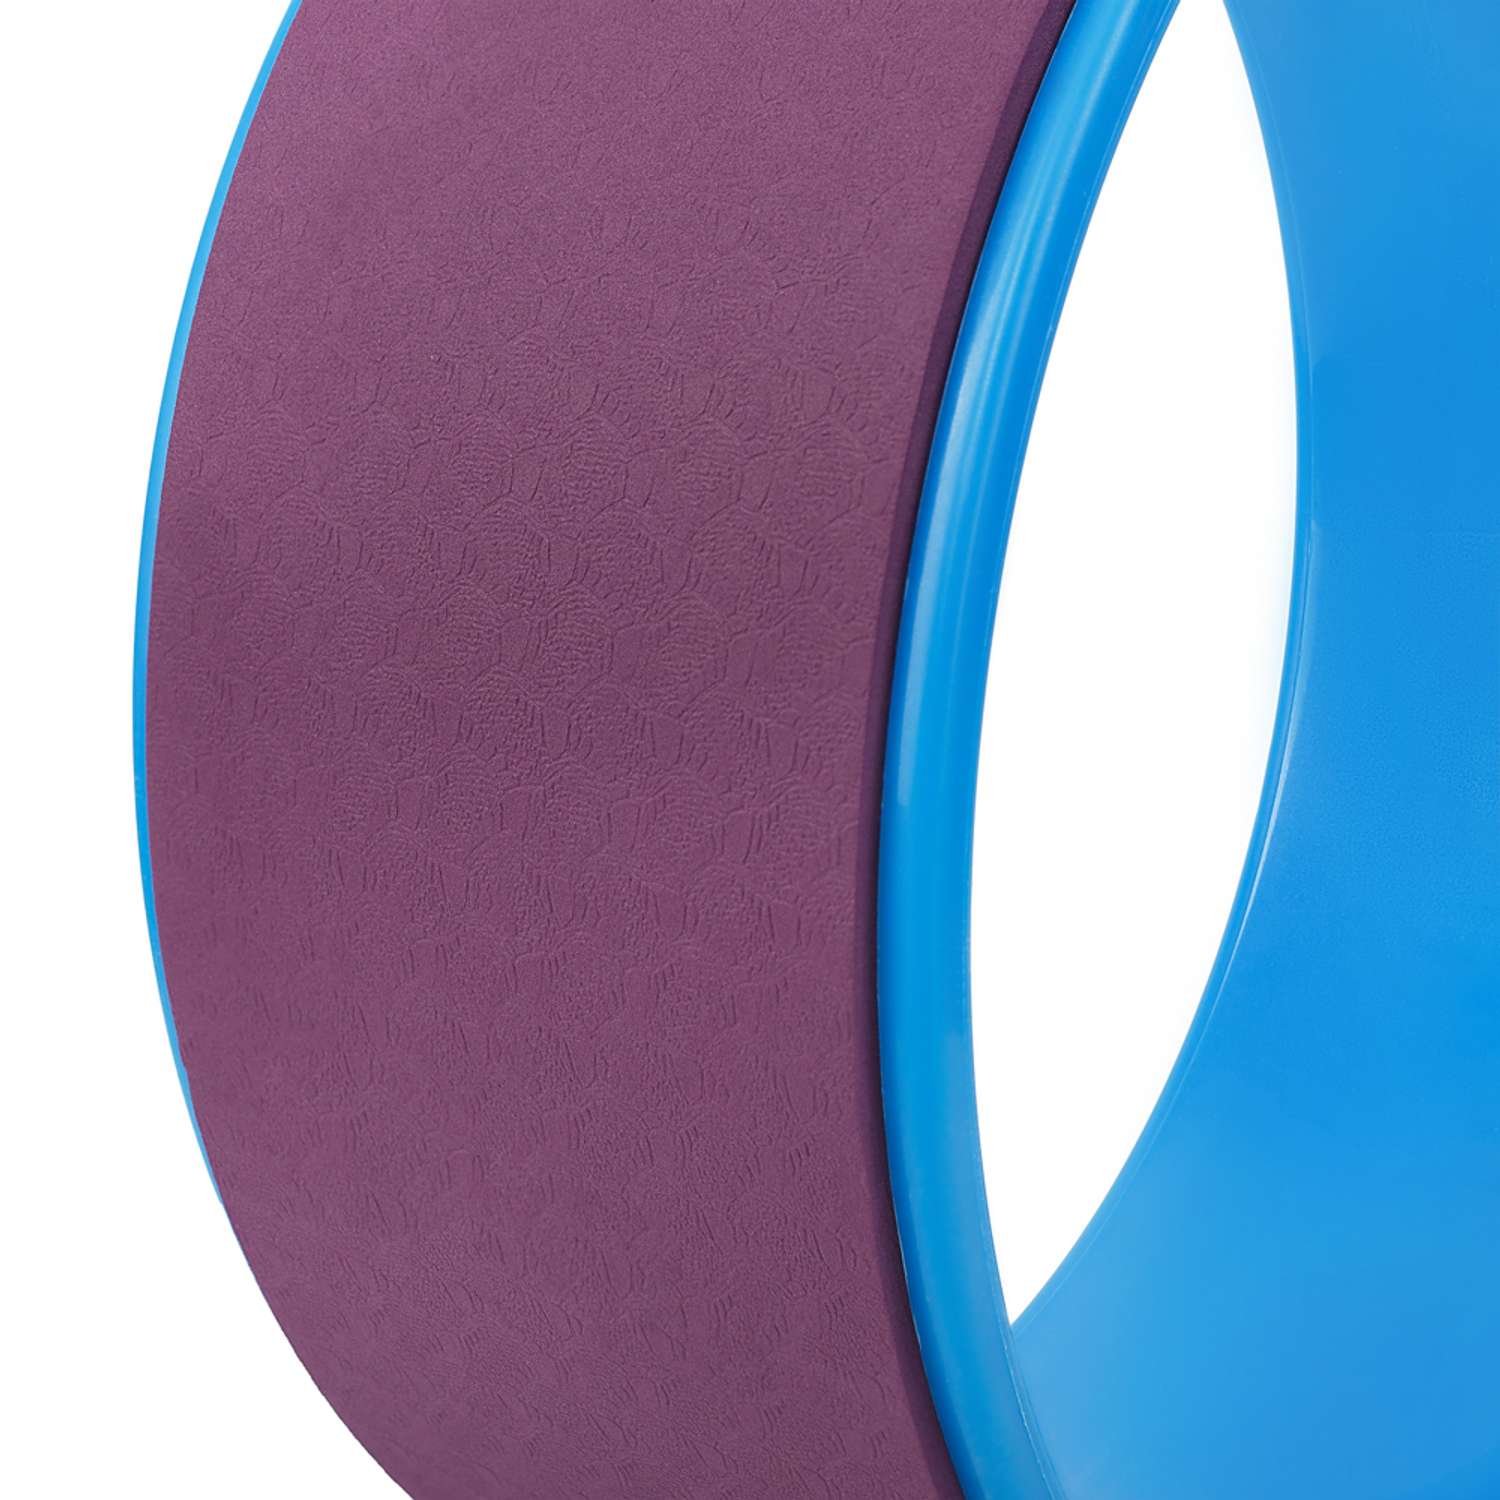 Колесо для йоги STRONG BODY фитнеса и пилатес 30 см х 12 см пурпурно-синее - фото 5